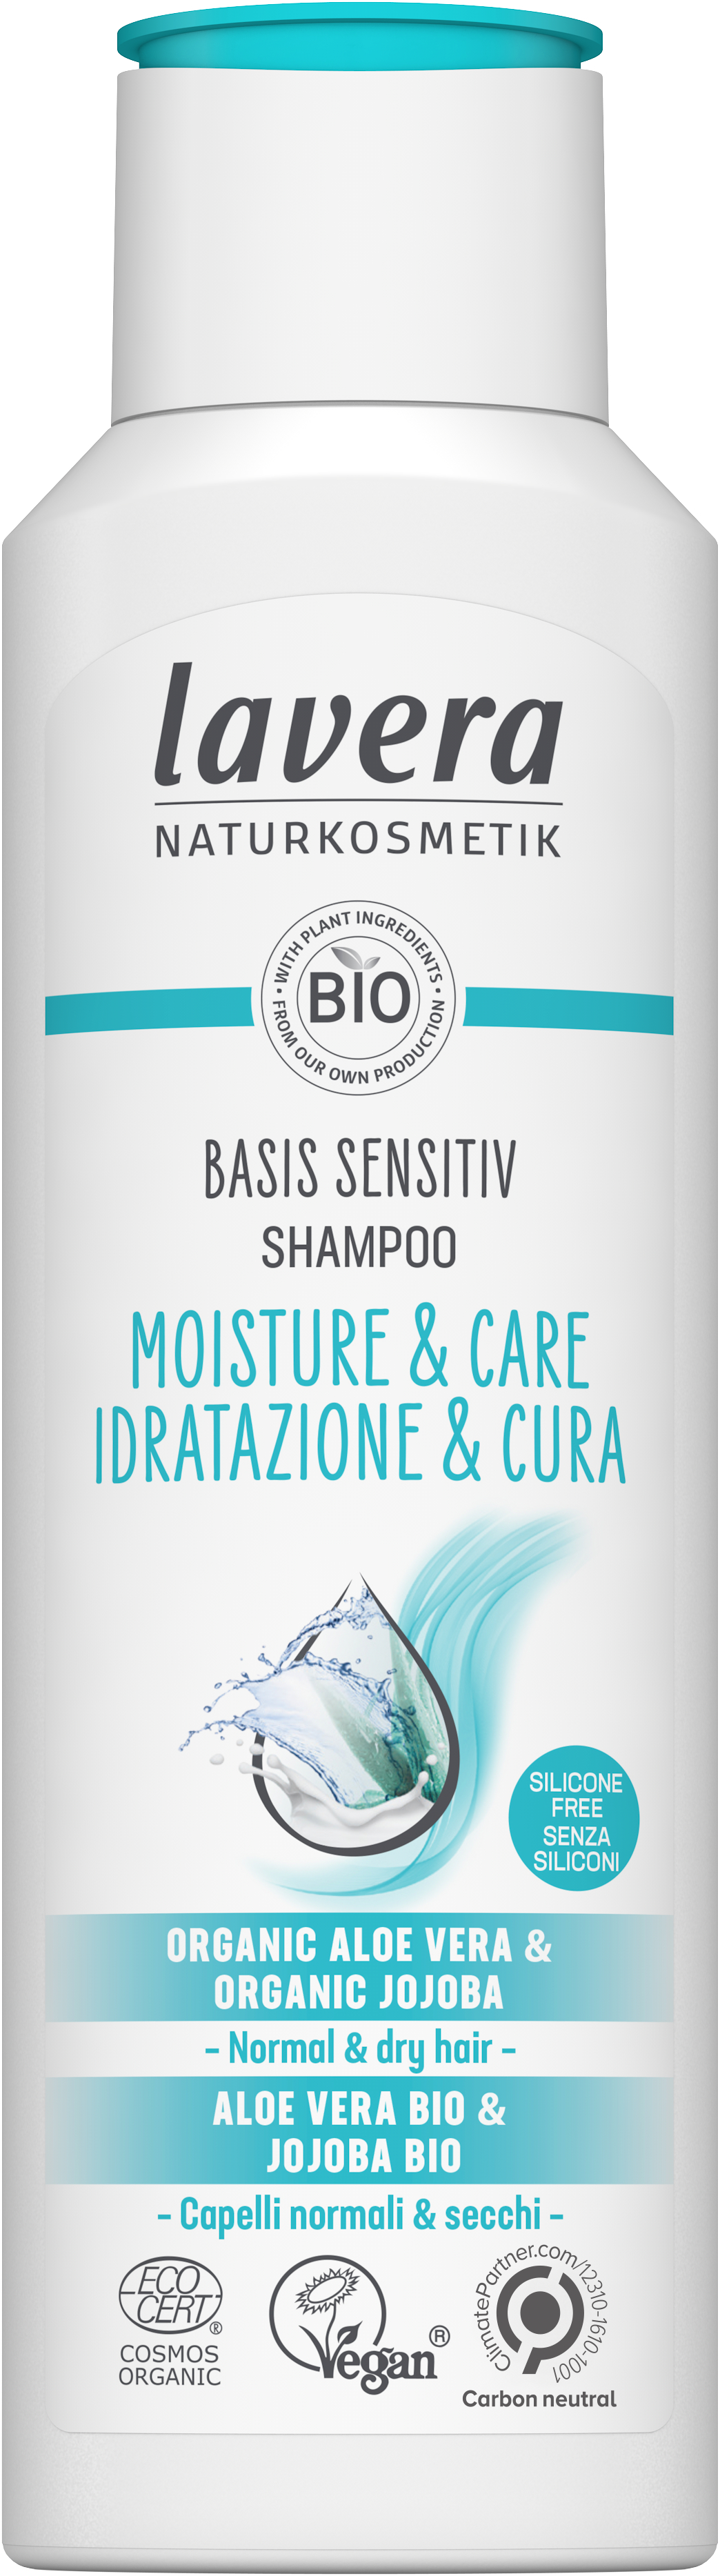 szampon lavera basis sensitiv